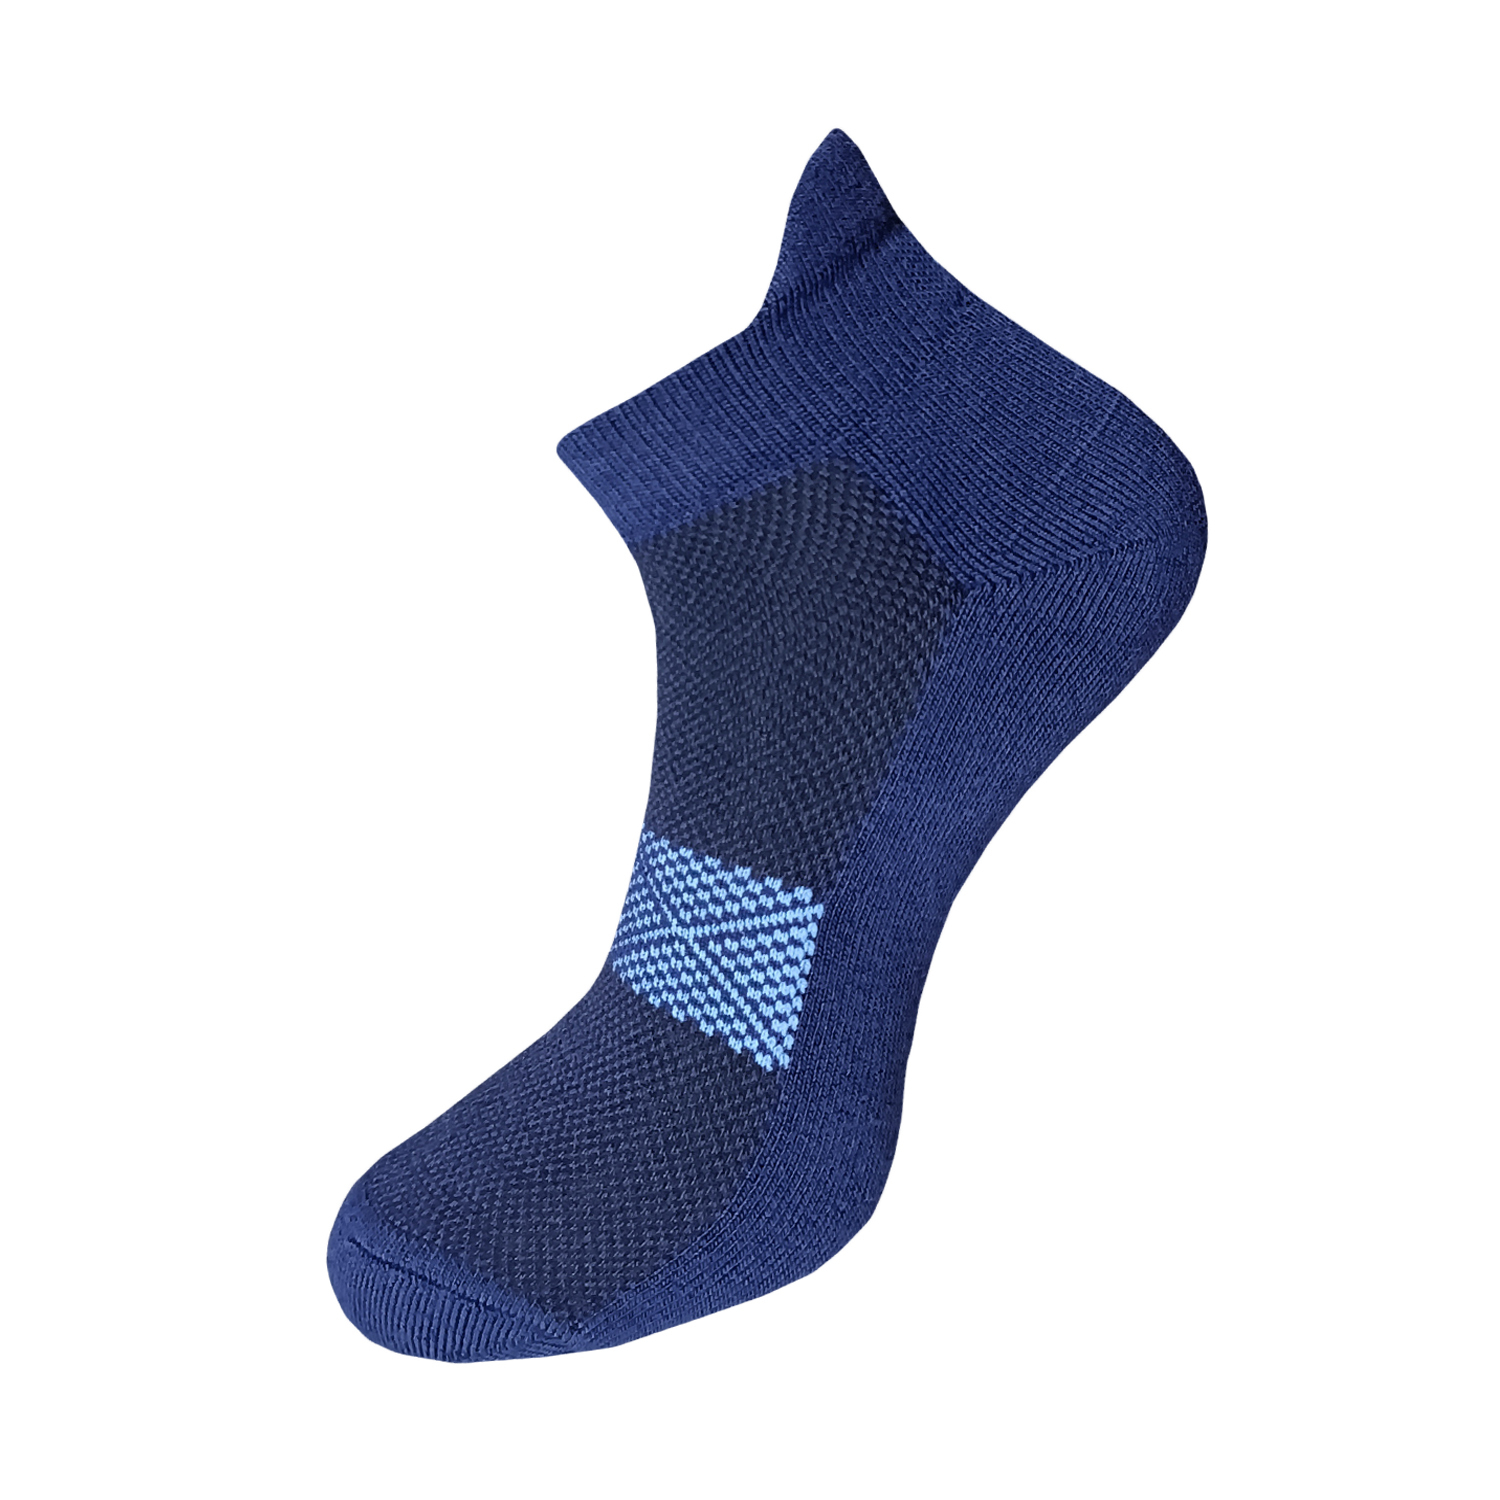 Ankle belt compression socks